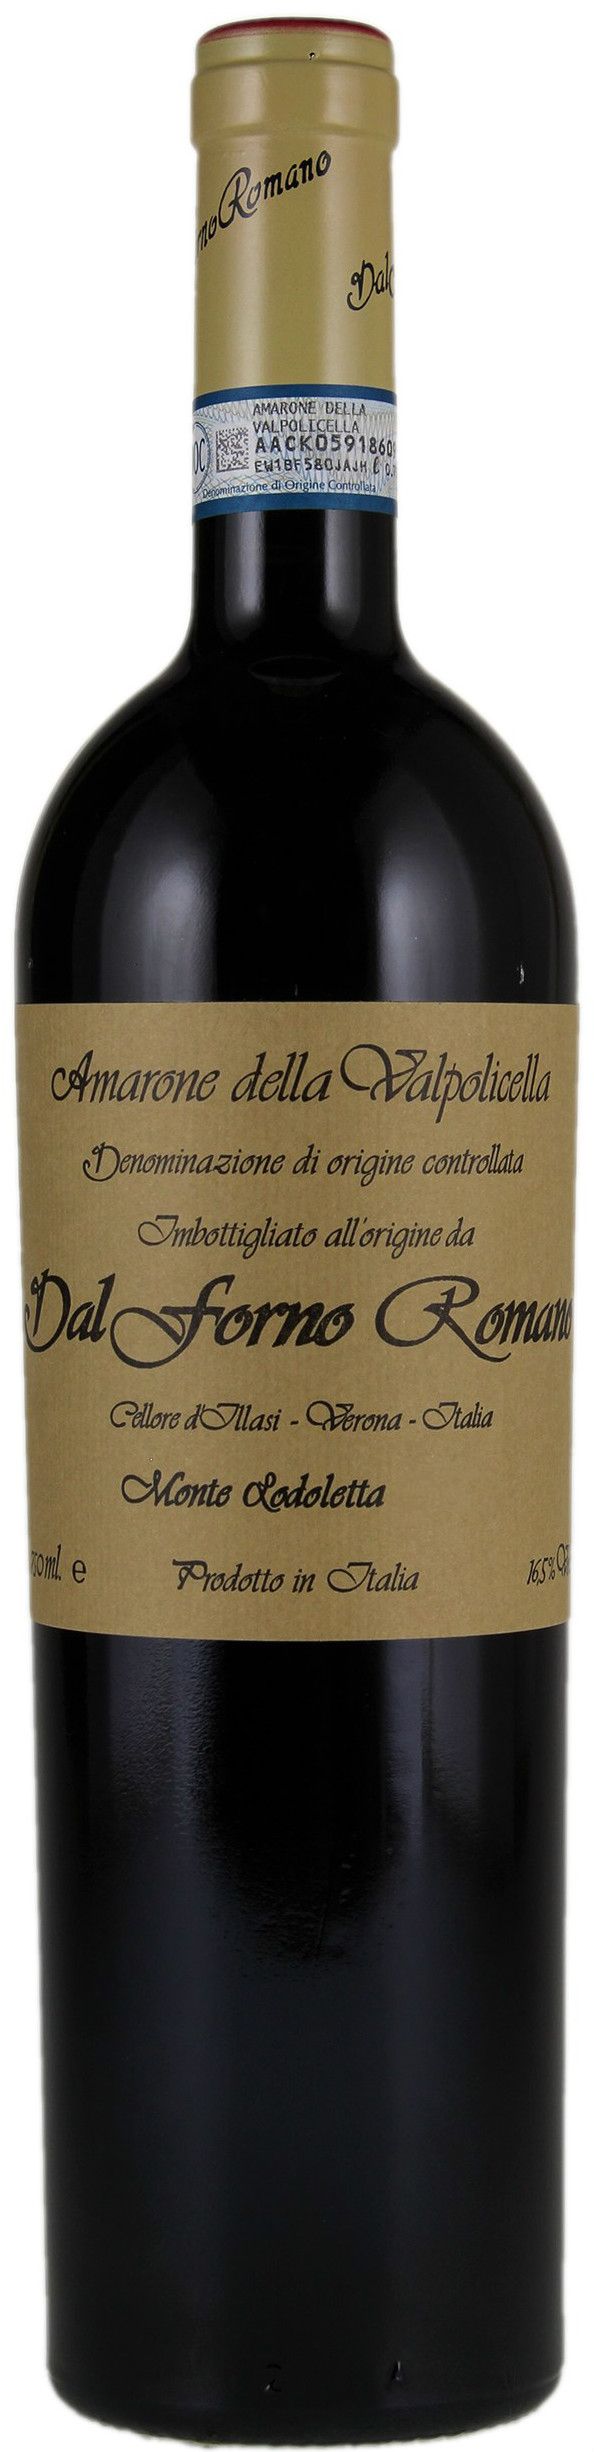 Dal Forno Romano, Amarone Della Valpolicella, 2012